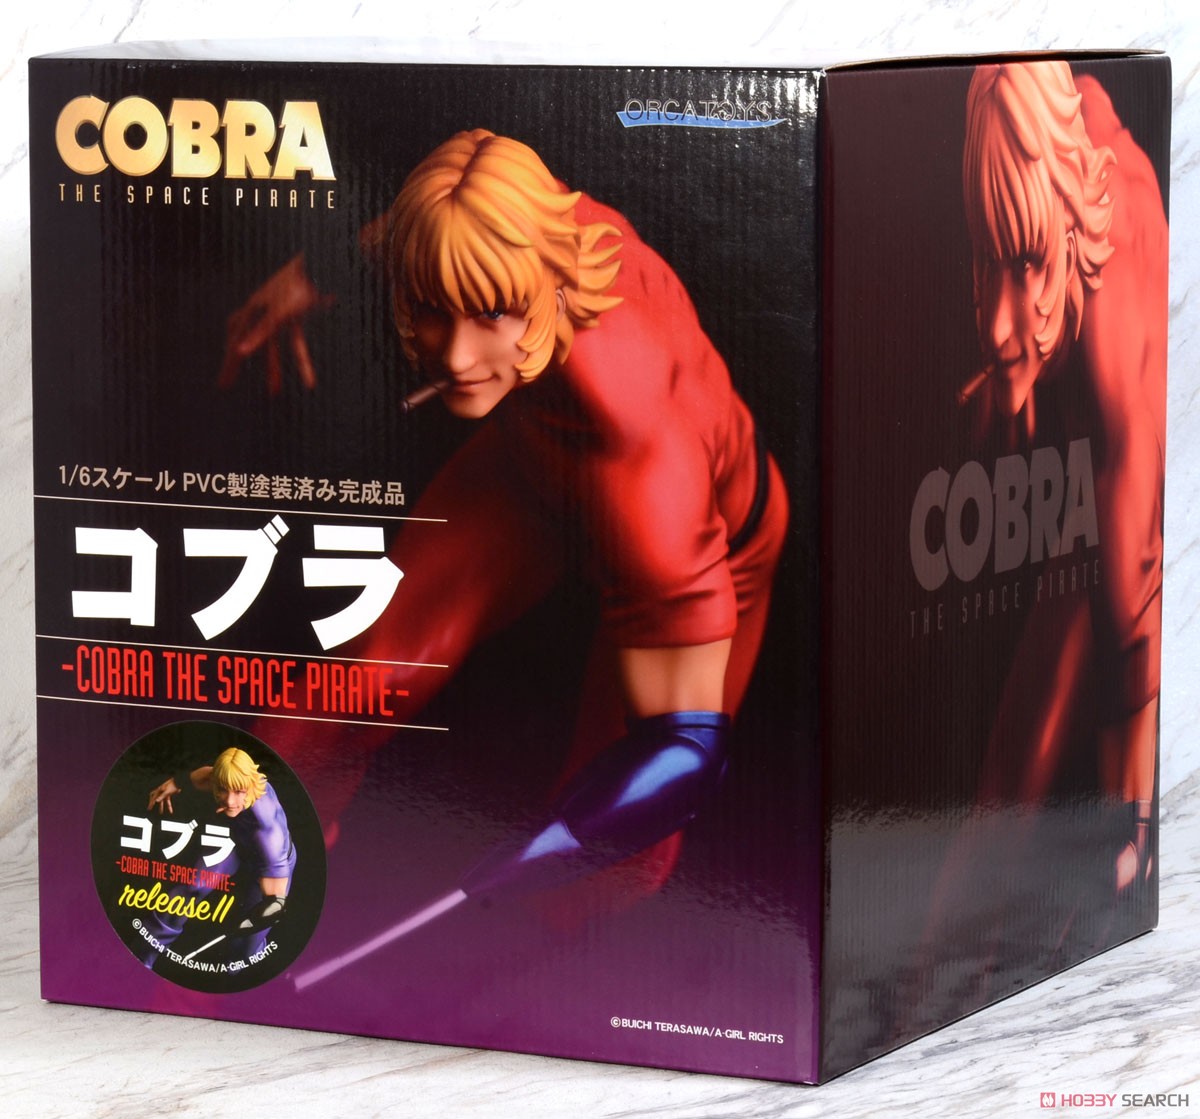 コブラ-COBRA THE SPACE PIRATE-releaseII (フィギュア) パッケージ1